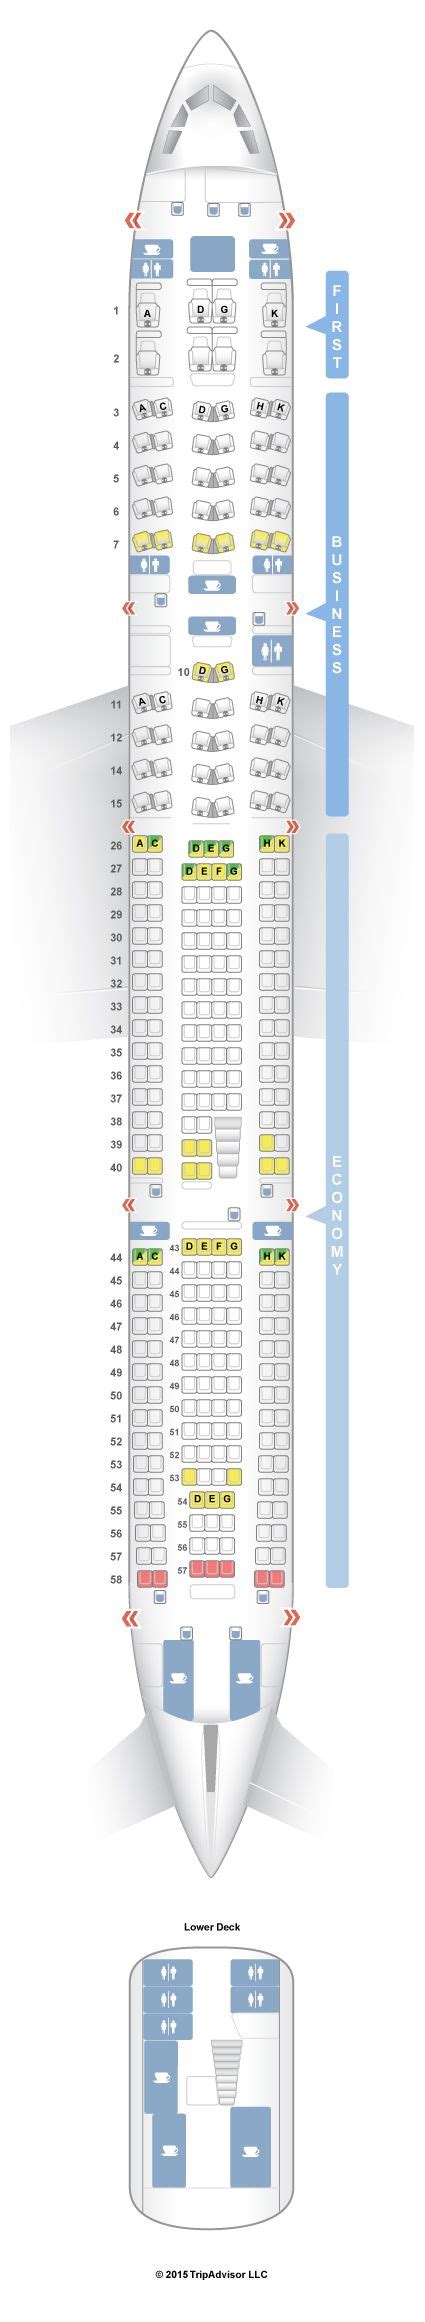 Seatguru Seat Map Lufthansa Airbus A340 600 346 V2 A340 600